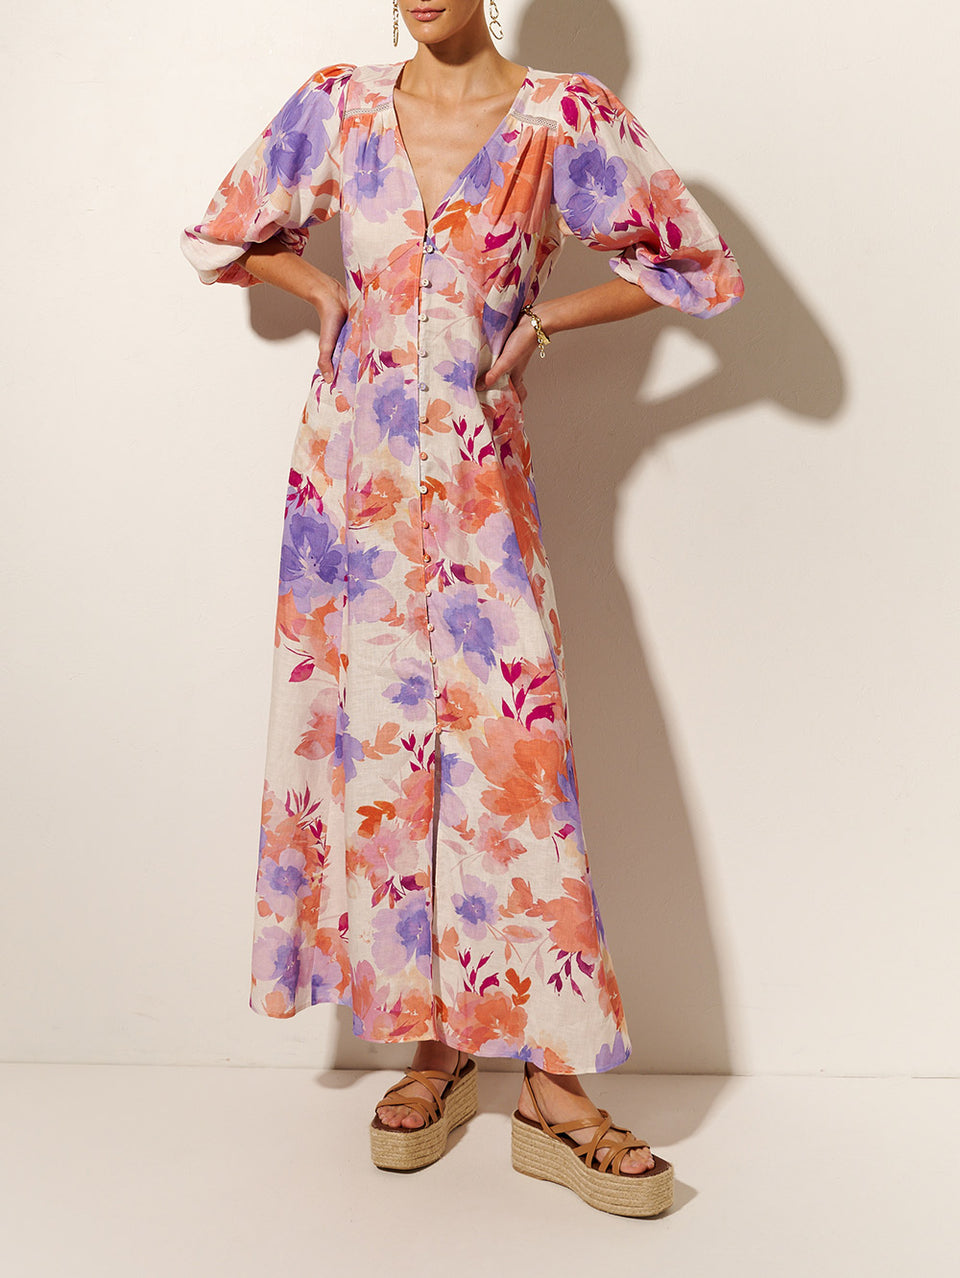 Johannes Maxi Dress KIVARI | Model wears pink and purple floral maxi dress